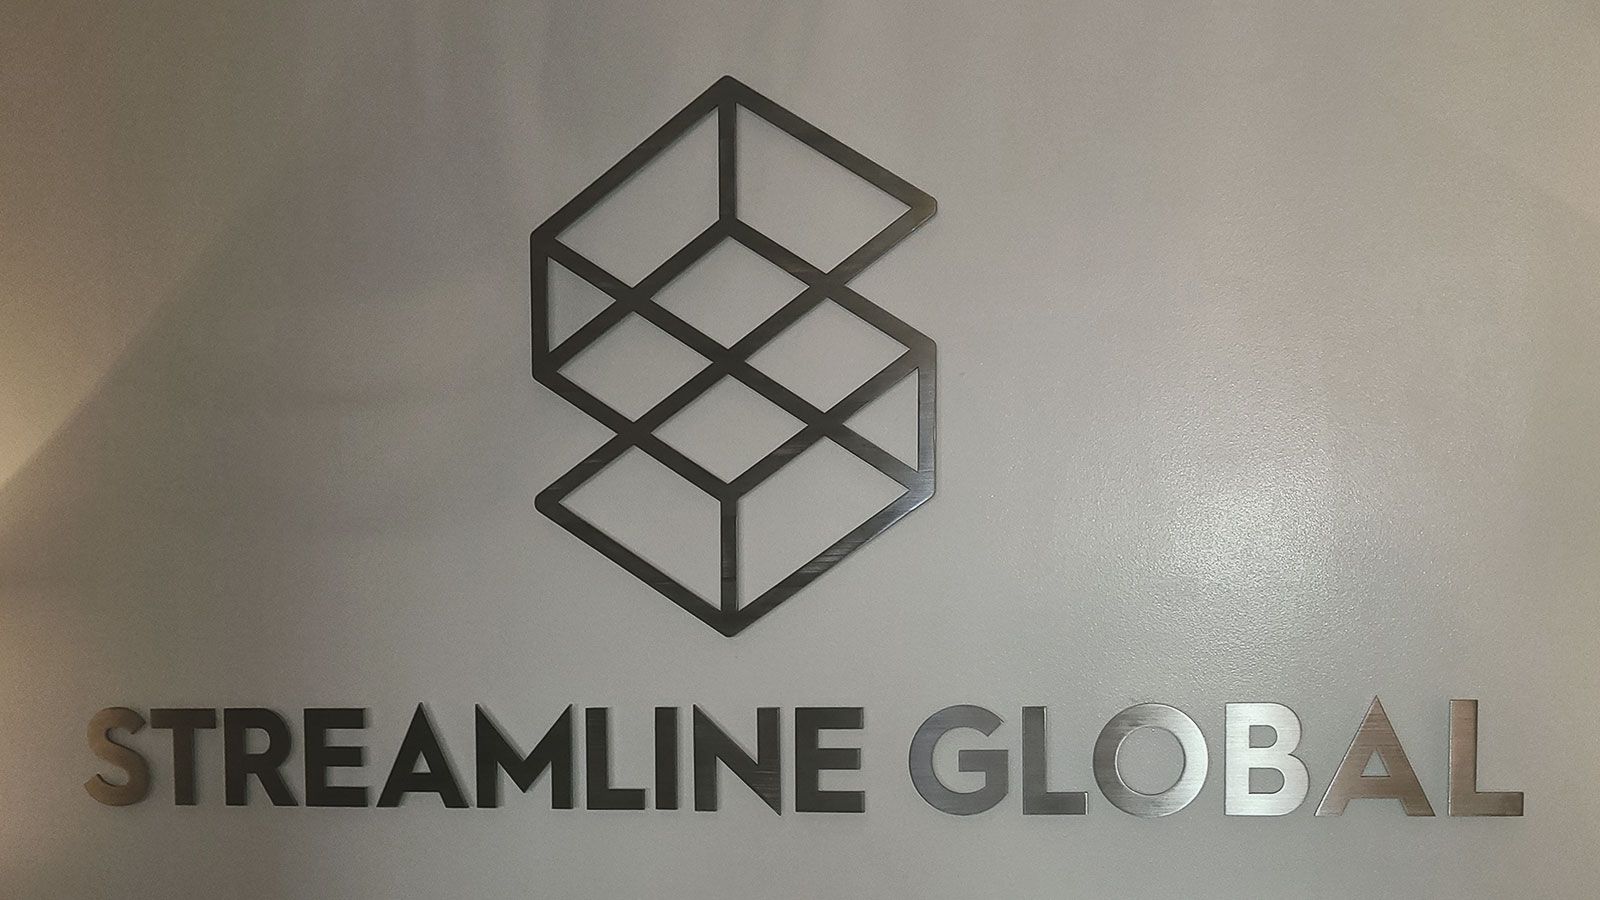 Streamline global 3d sign